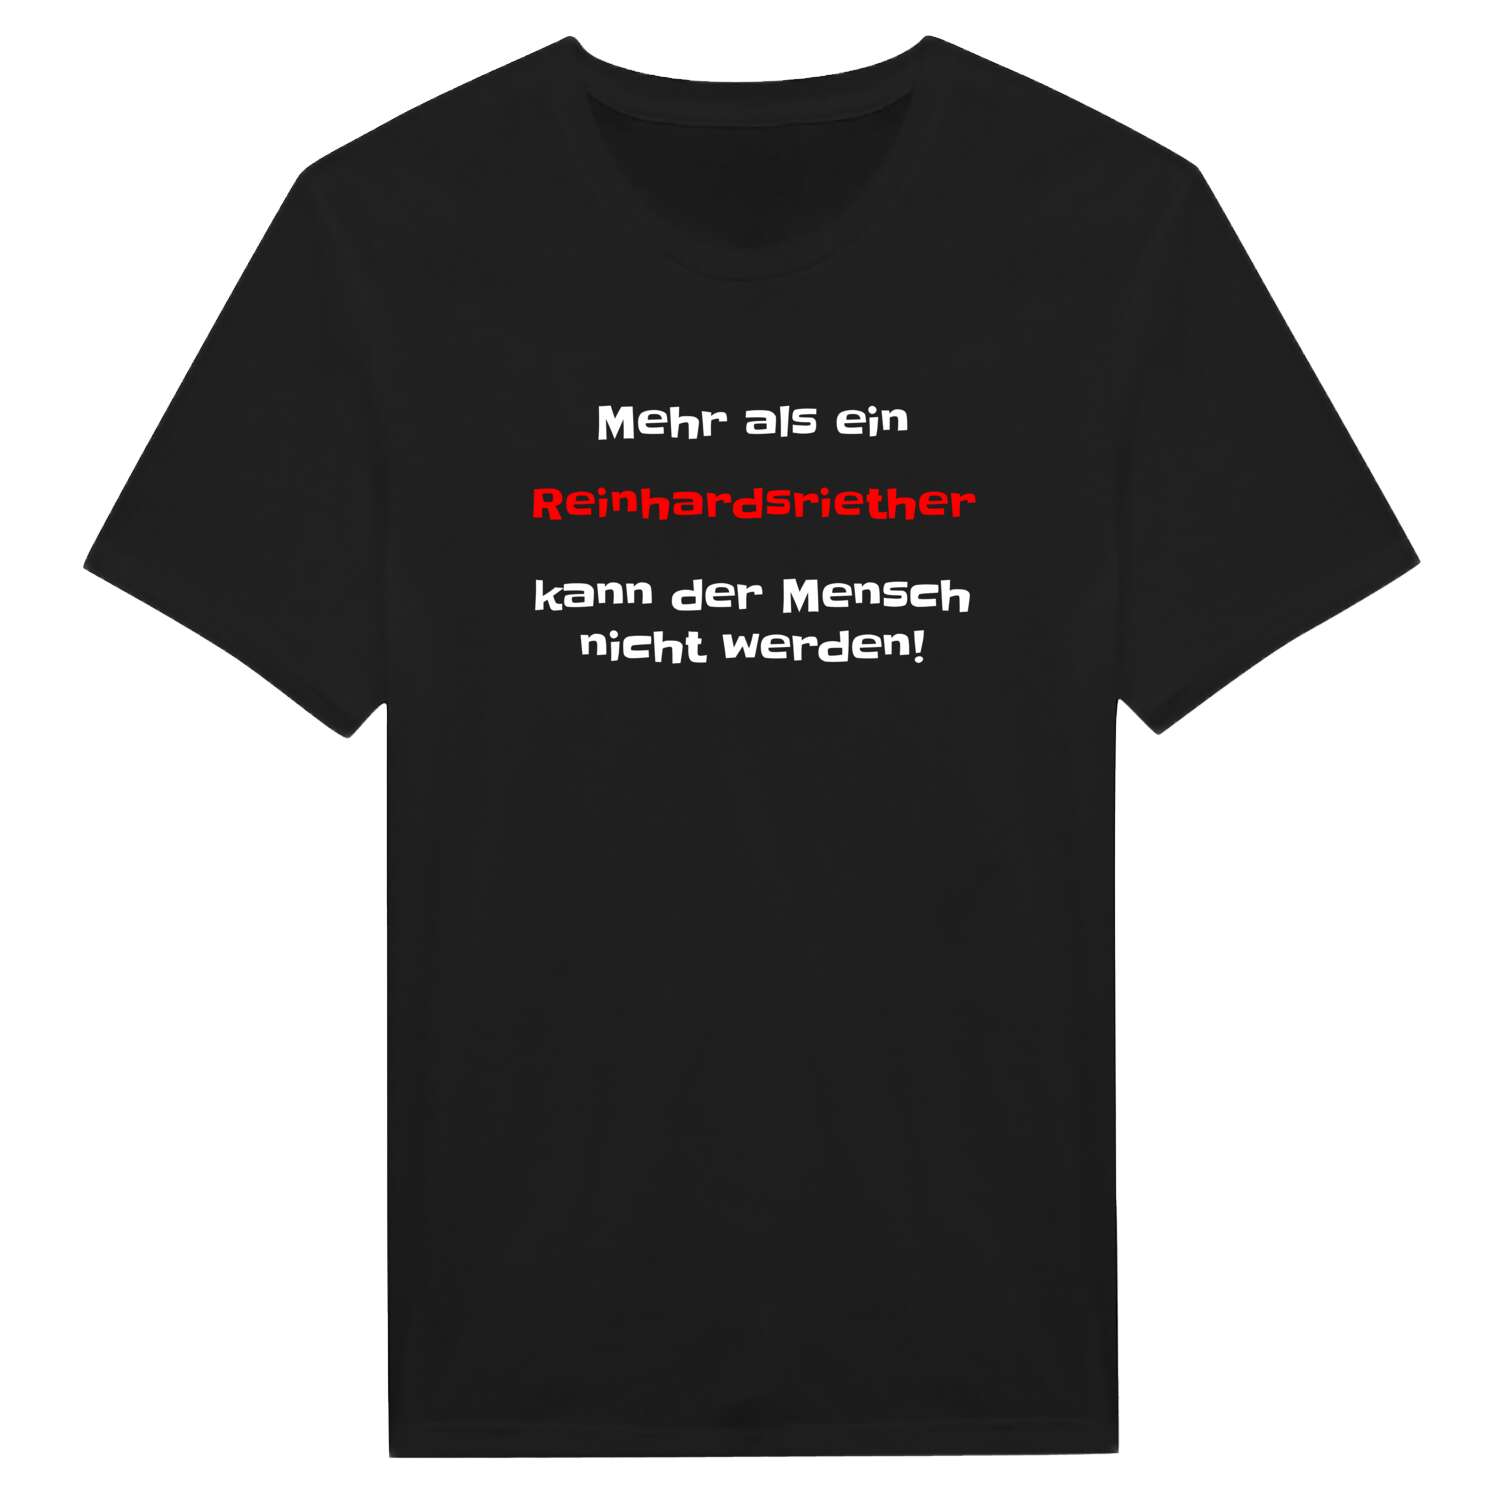 Reinhardsrieth T-Shirt »Mehr als ein«